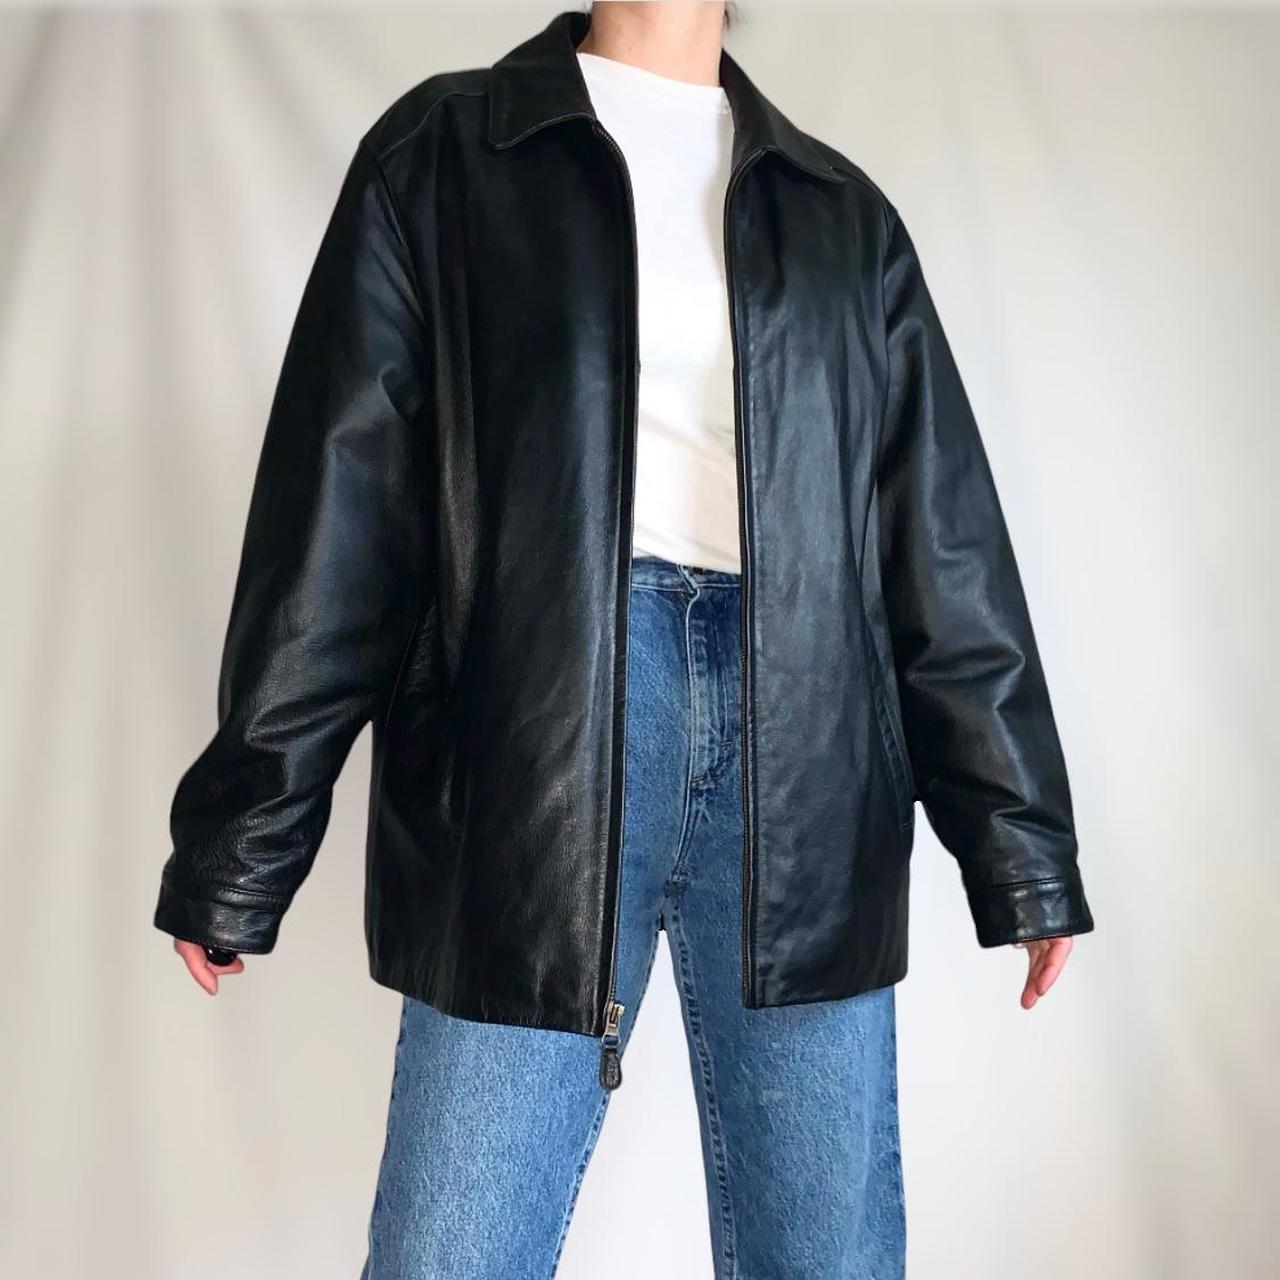 Vintage 90s/Y2K black leather jacket, minimalist,... - Depop